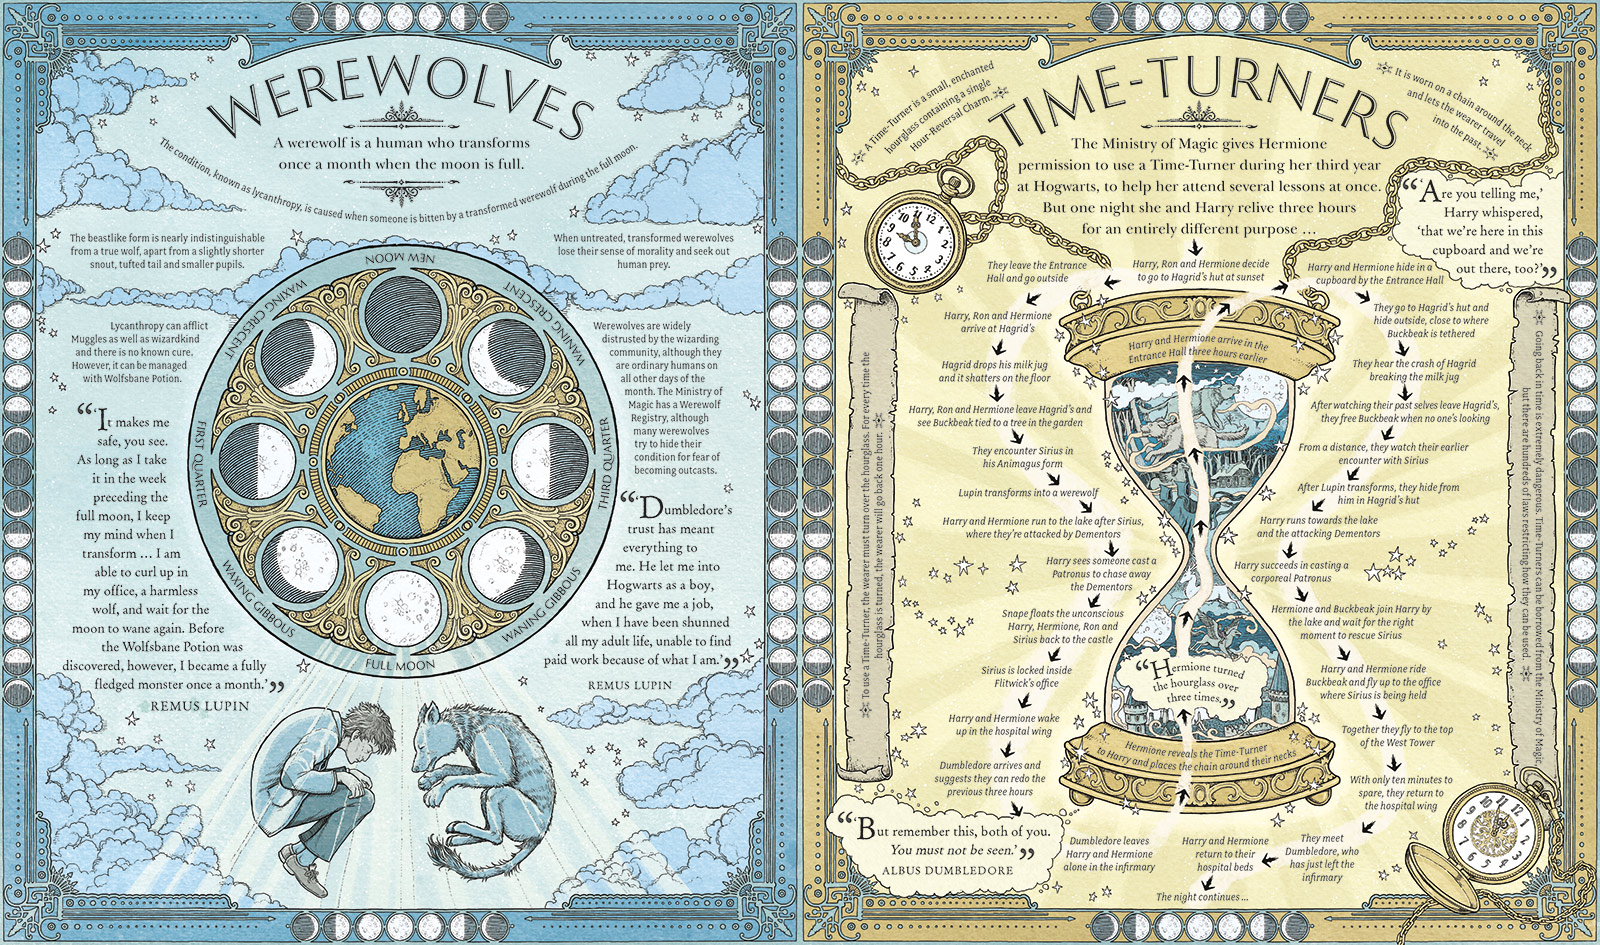 Werewolves & Time Turner - by Tomislav Tomic